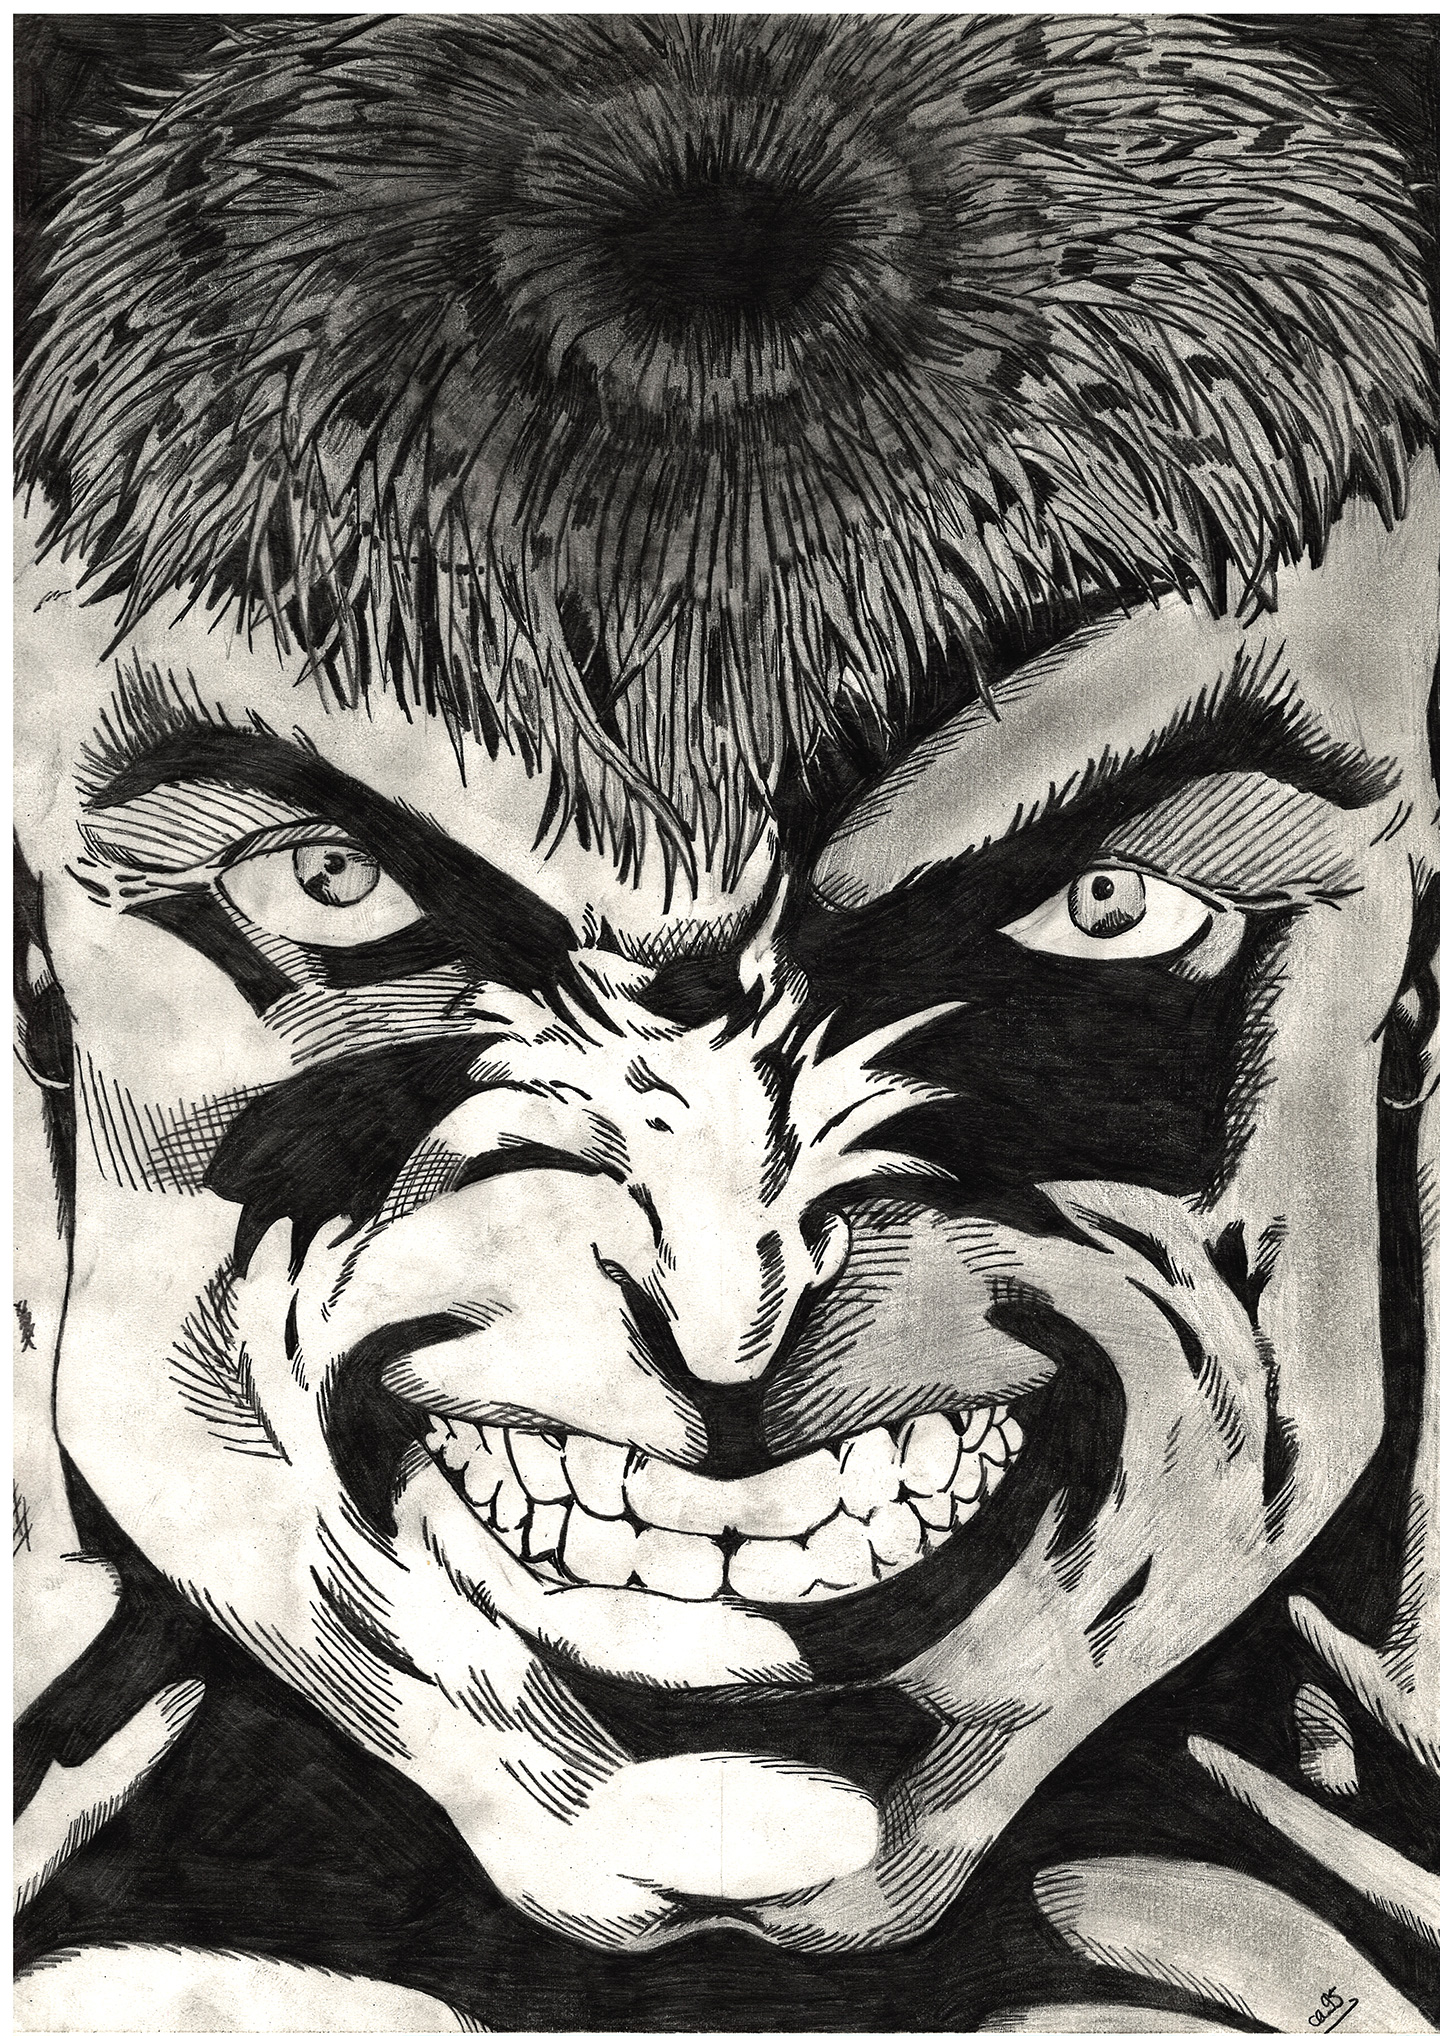 Un dessin noir et blanc de la tête de Hulk des Marvel Comics